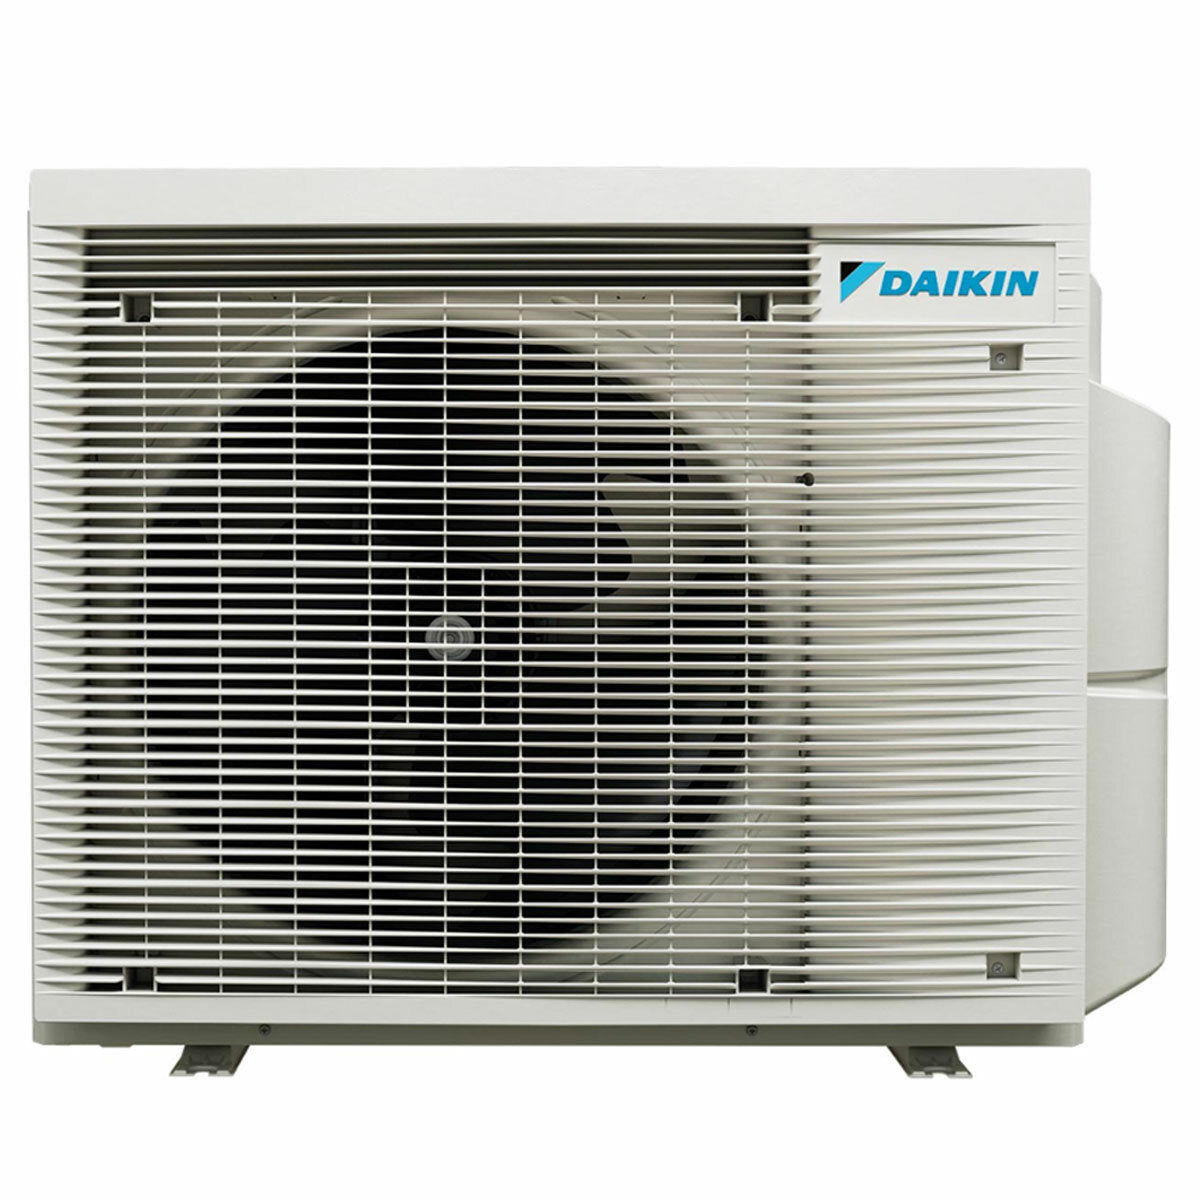 Daikin Emura 3 trial split air conditioner 9000+12000+12000 BTU inverter A+ wifi outdoor unit 6.8 kW Black